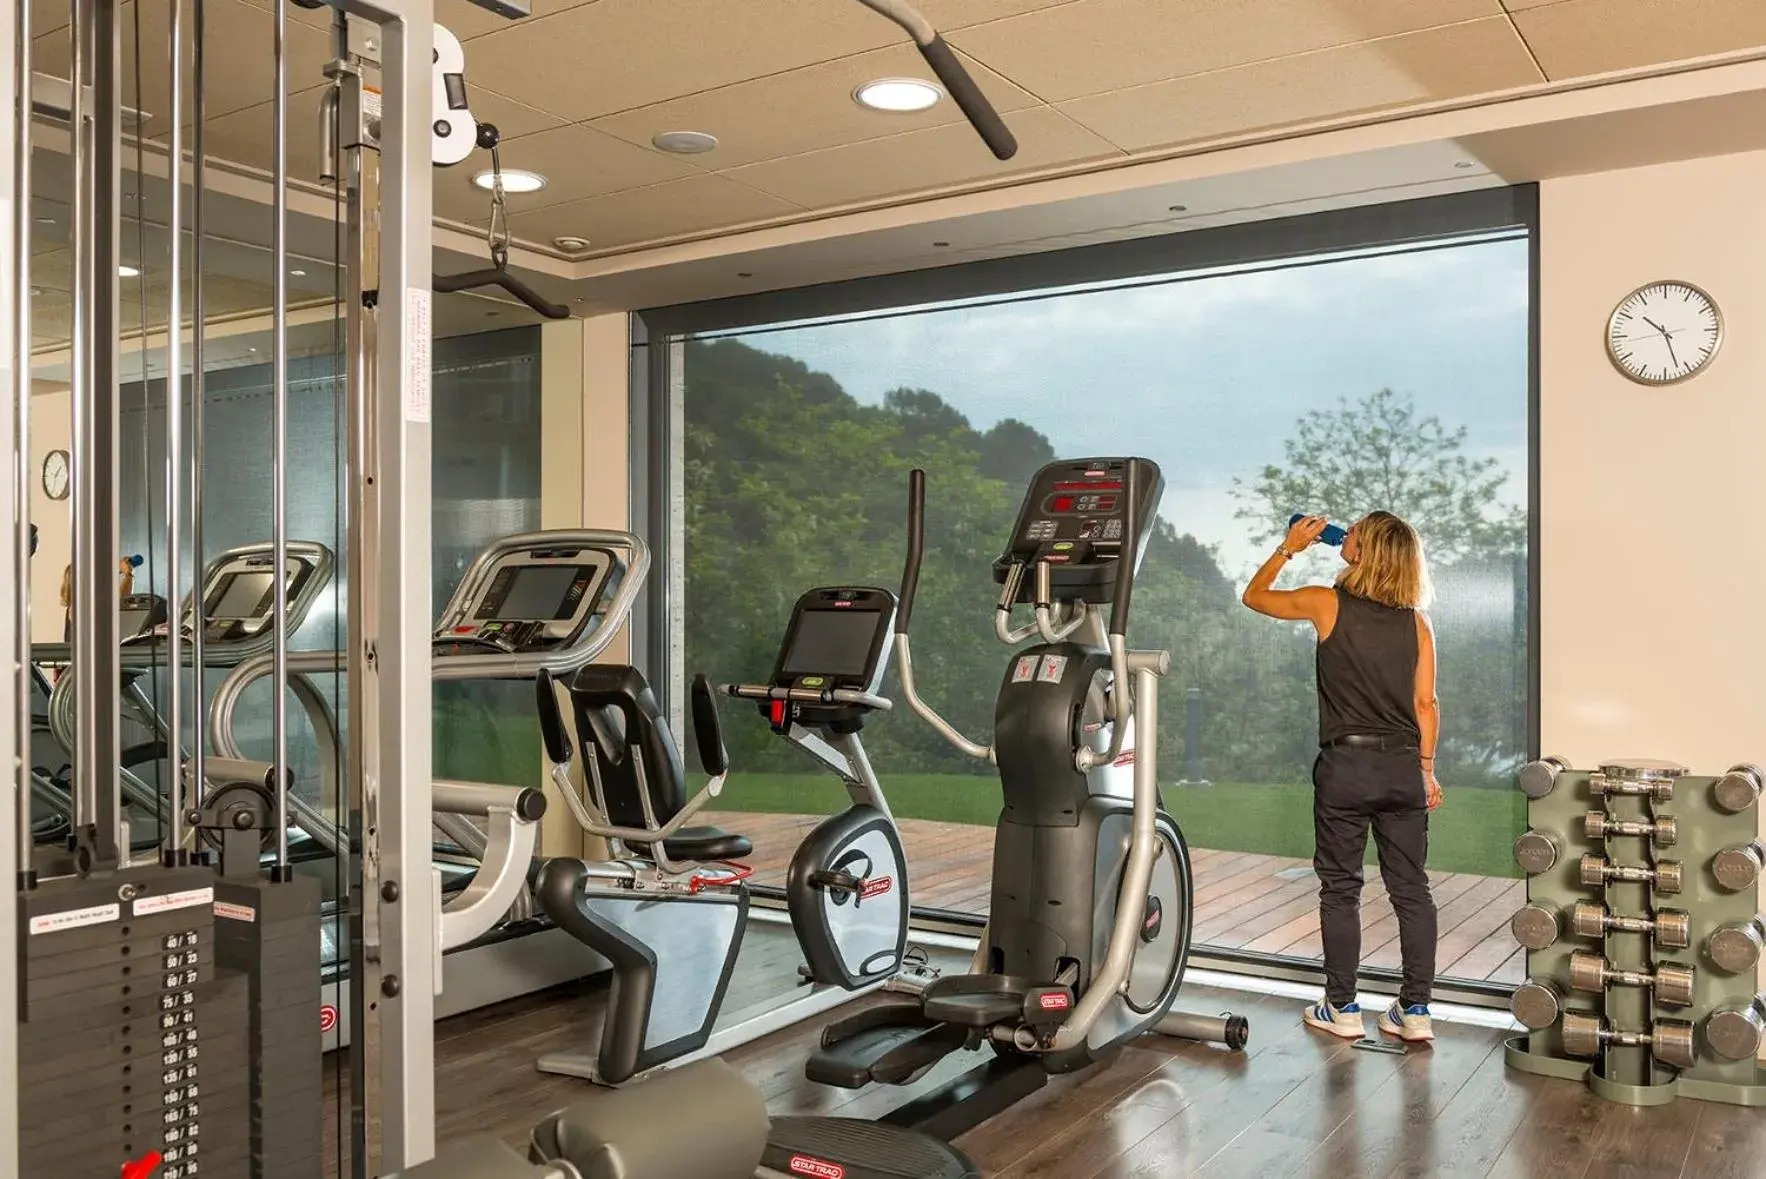 Fitness centre/facilities, Fitness Center/Facilities in Hotel Santa Marta